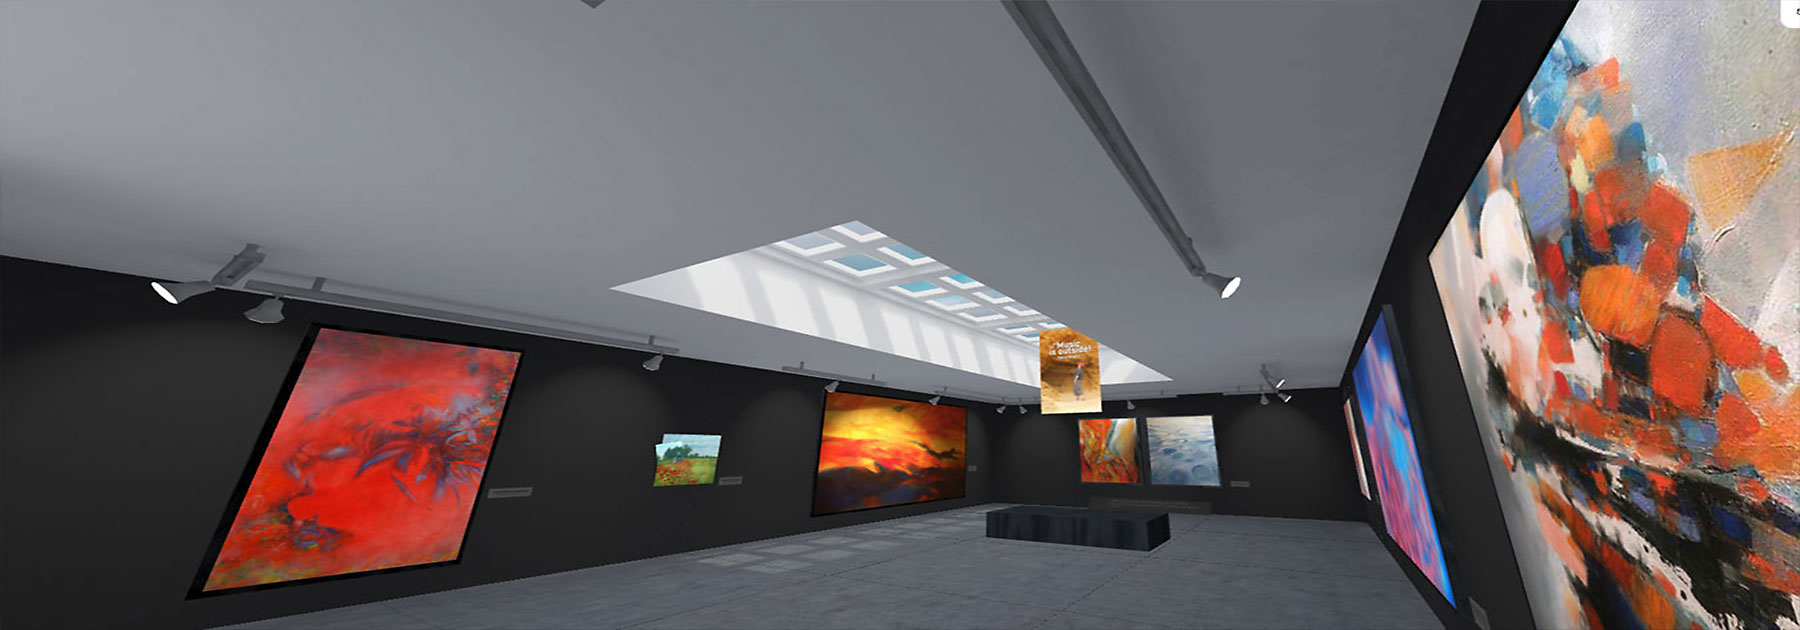 VR 360, réalité virtuelle, visite virtuelle de l' expo des tableaux à l' huile sur toile de Jc Tanguy, Art contemporain abstrait, Nantes - France